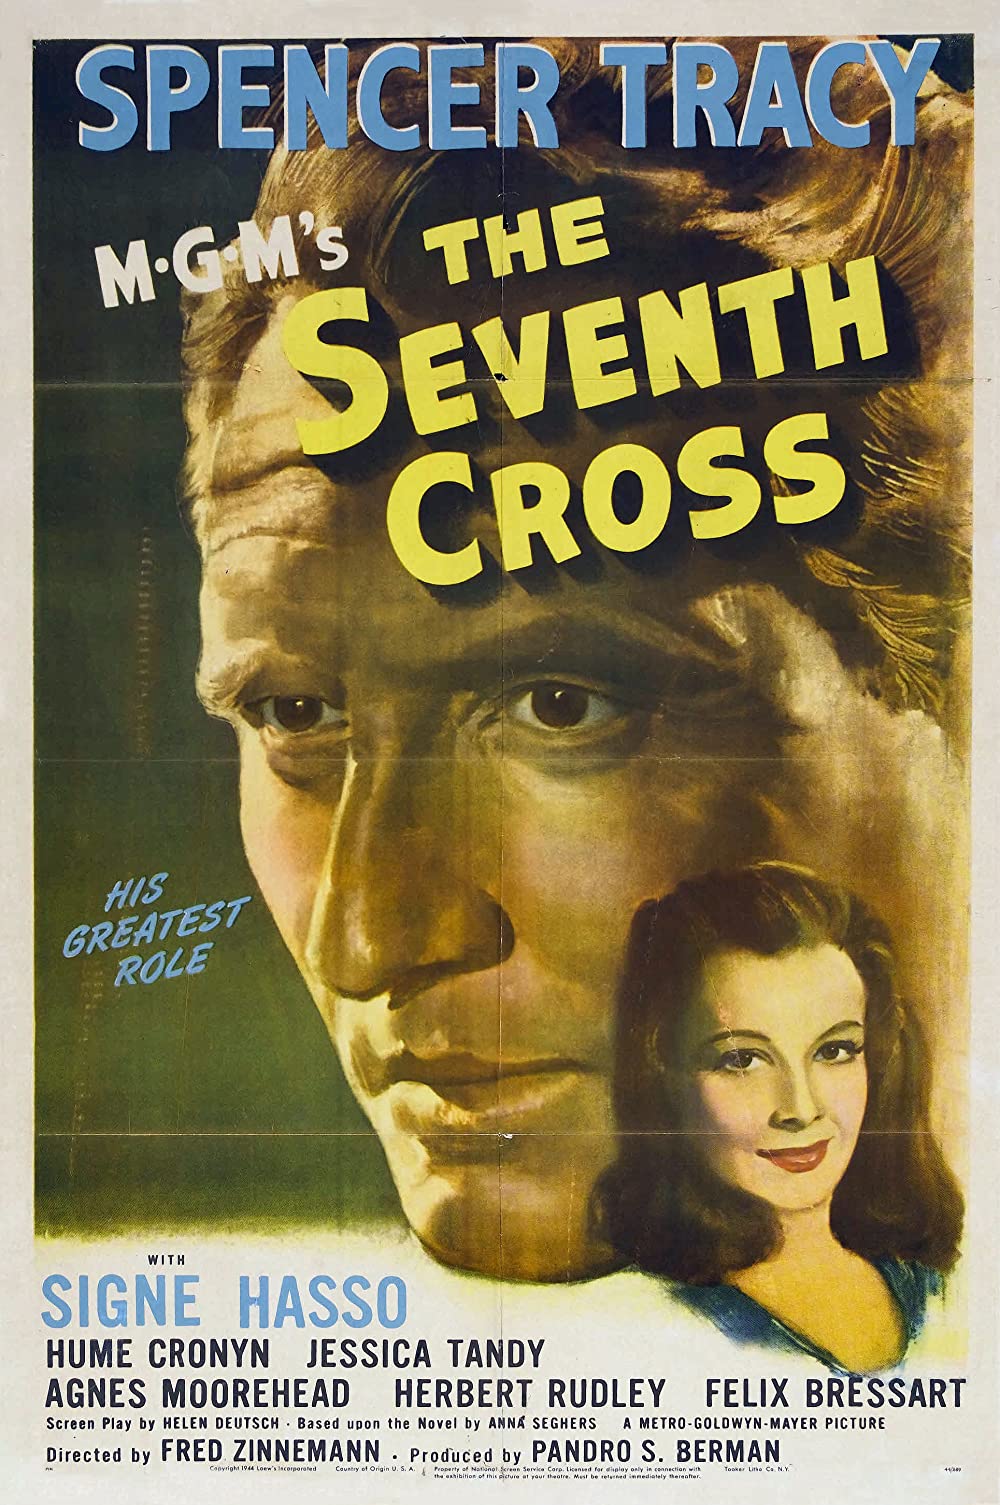 Filmbeschreibung zu The Seventh Cross